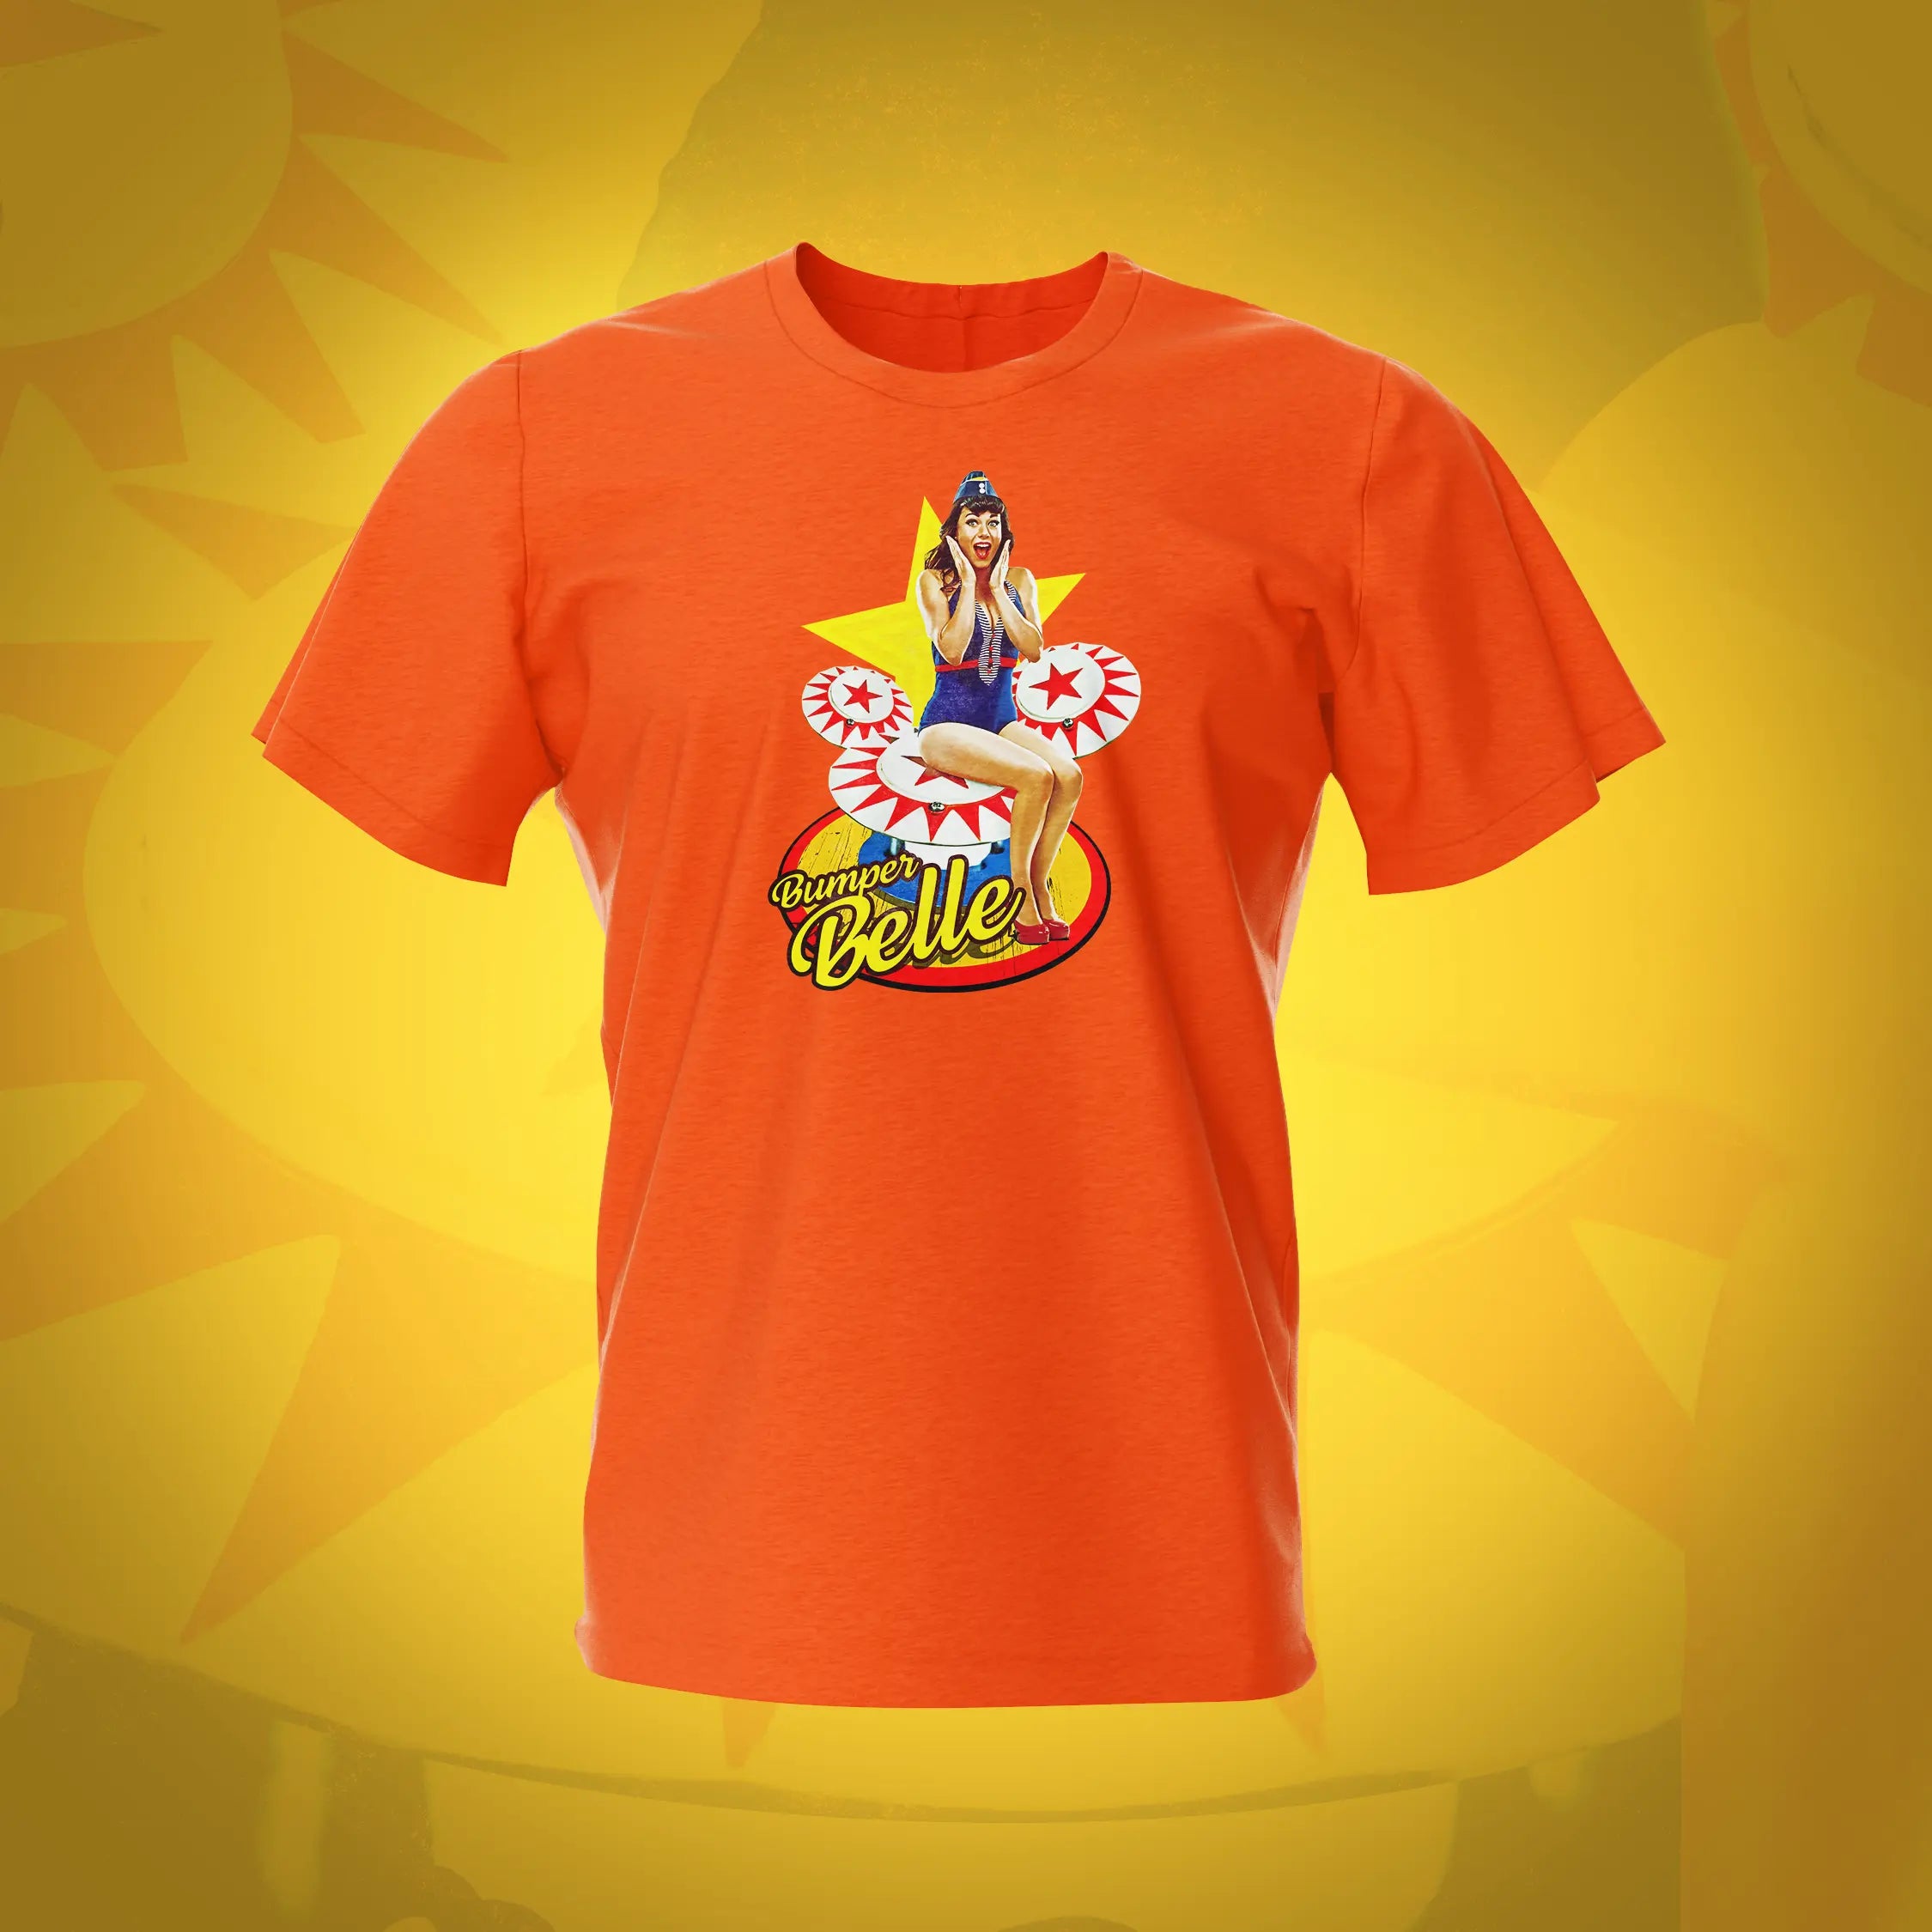 Bumper Belle Orange Pinup Pinball T-shirt | Pinball Invasion